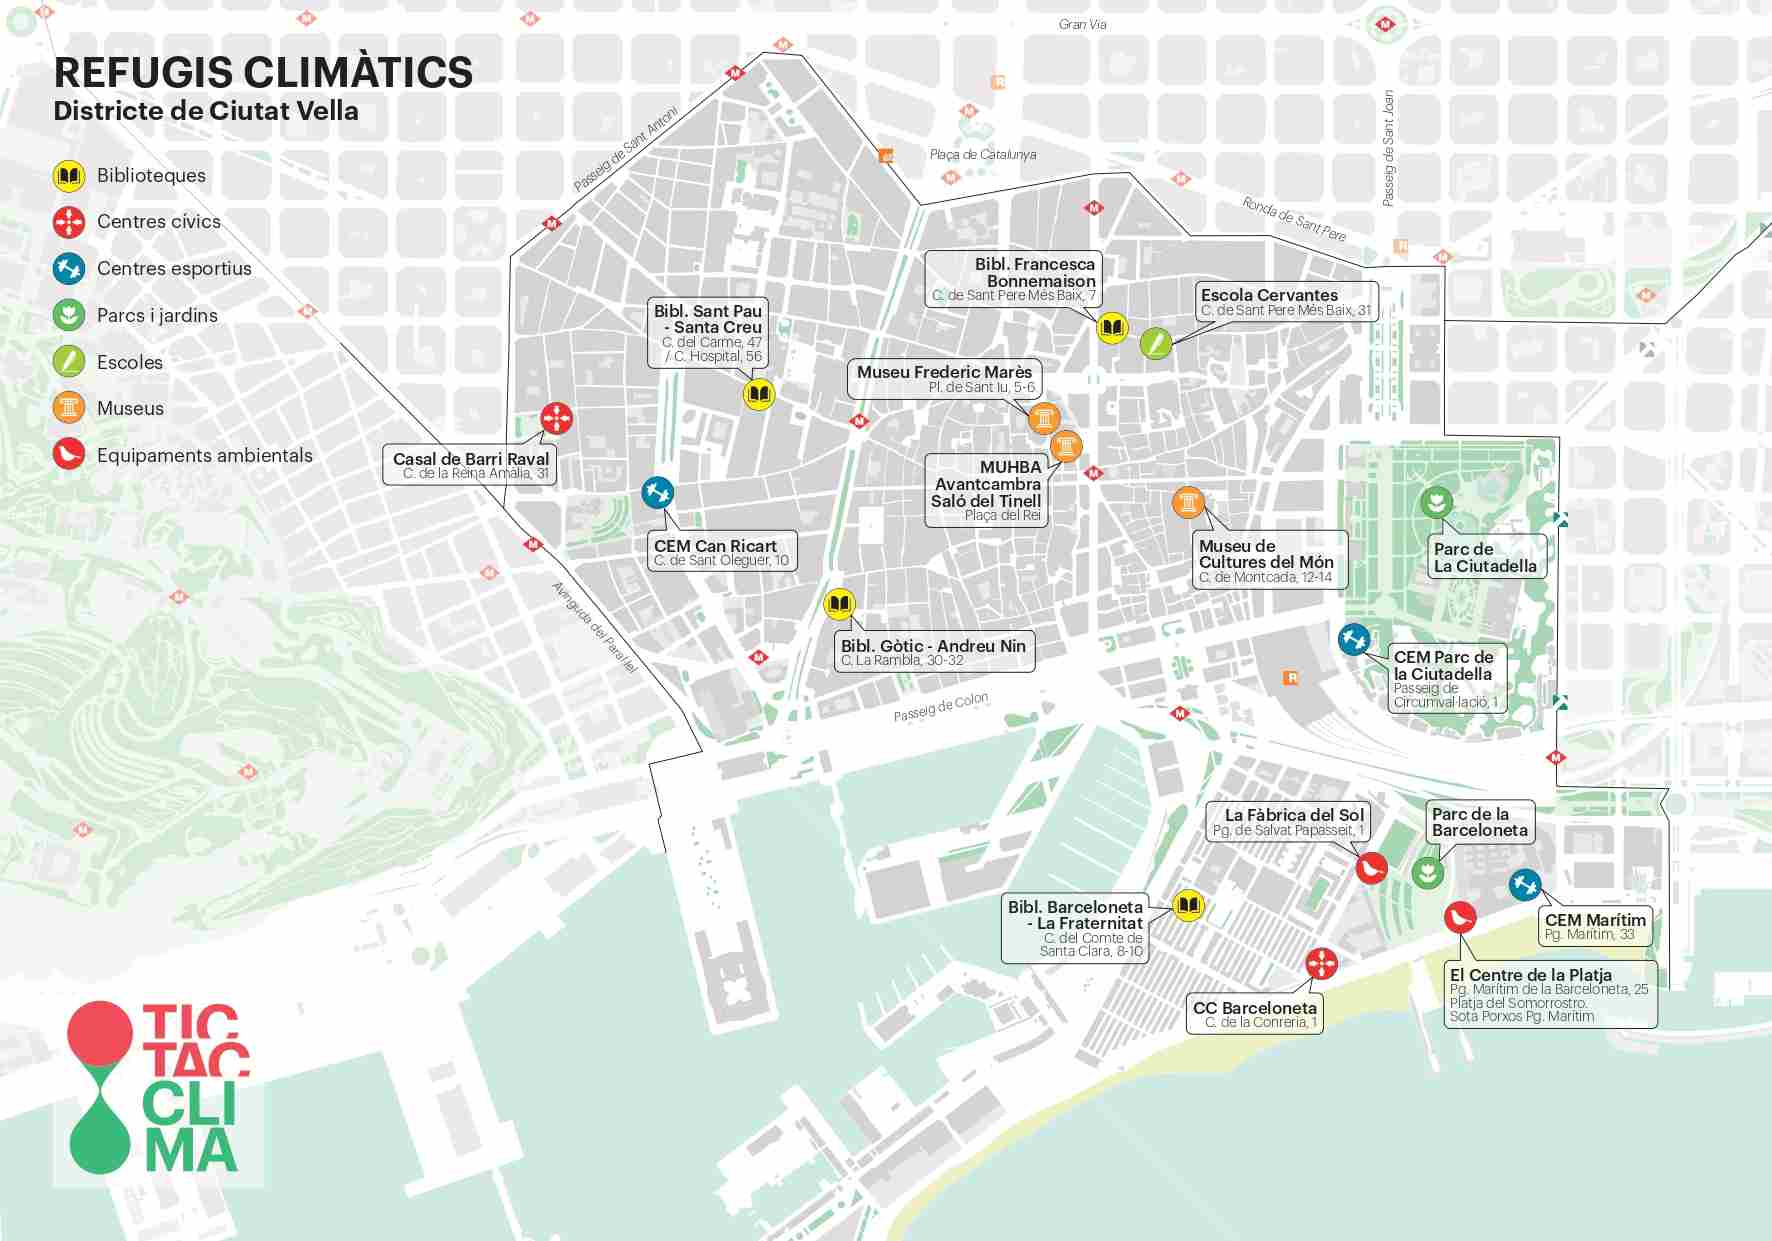 Mapa refugis climàtics Ciutat Vella